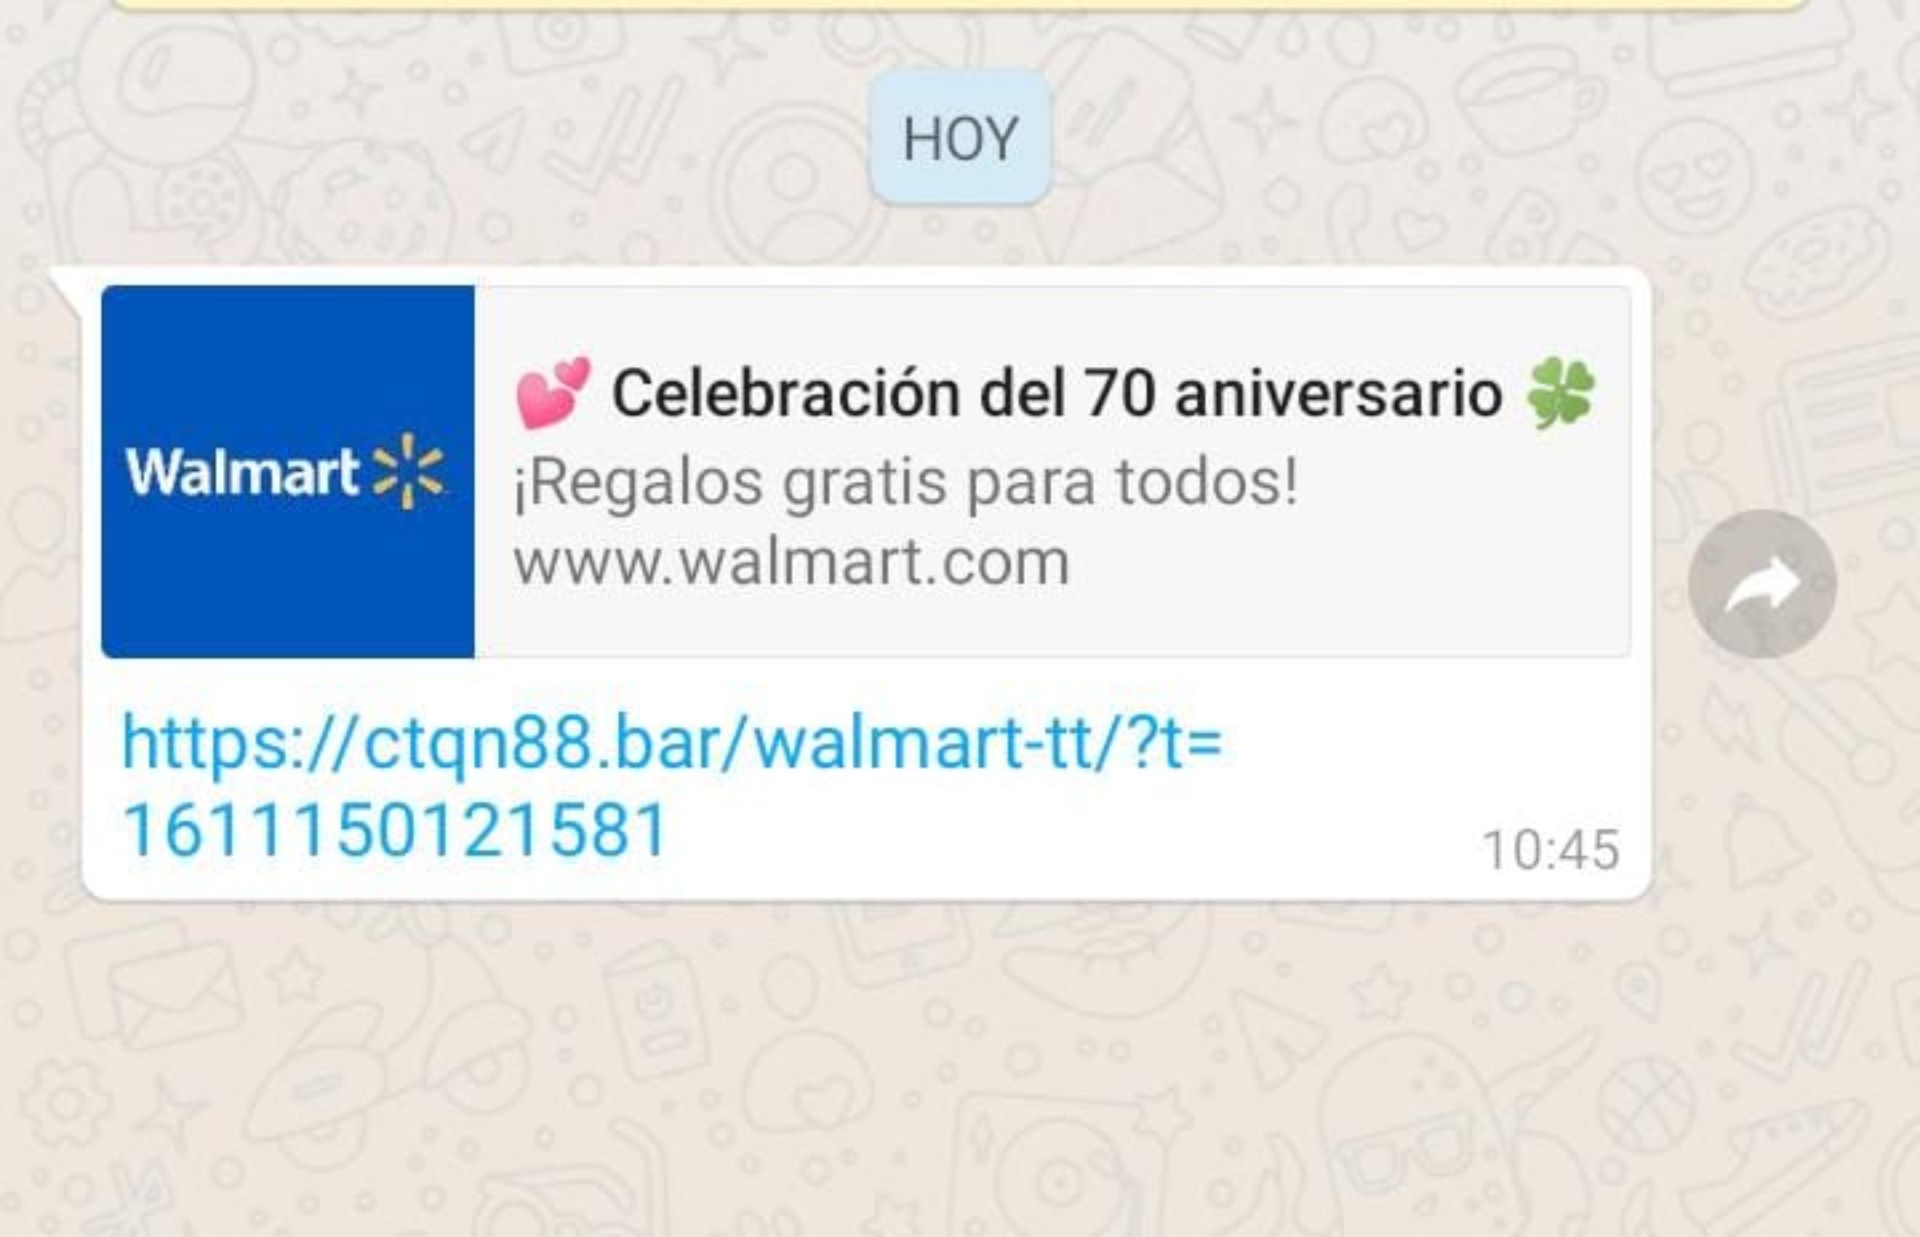 Alerta por un falso mensaje por la celebración de los 70 años de Walmart -  Canal 9 Televida Mendoza